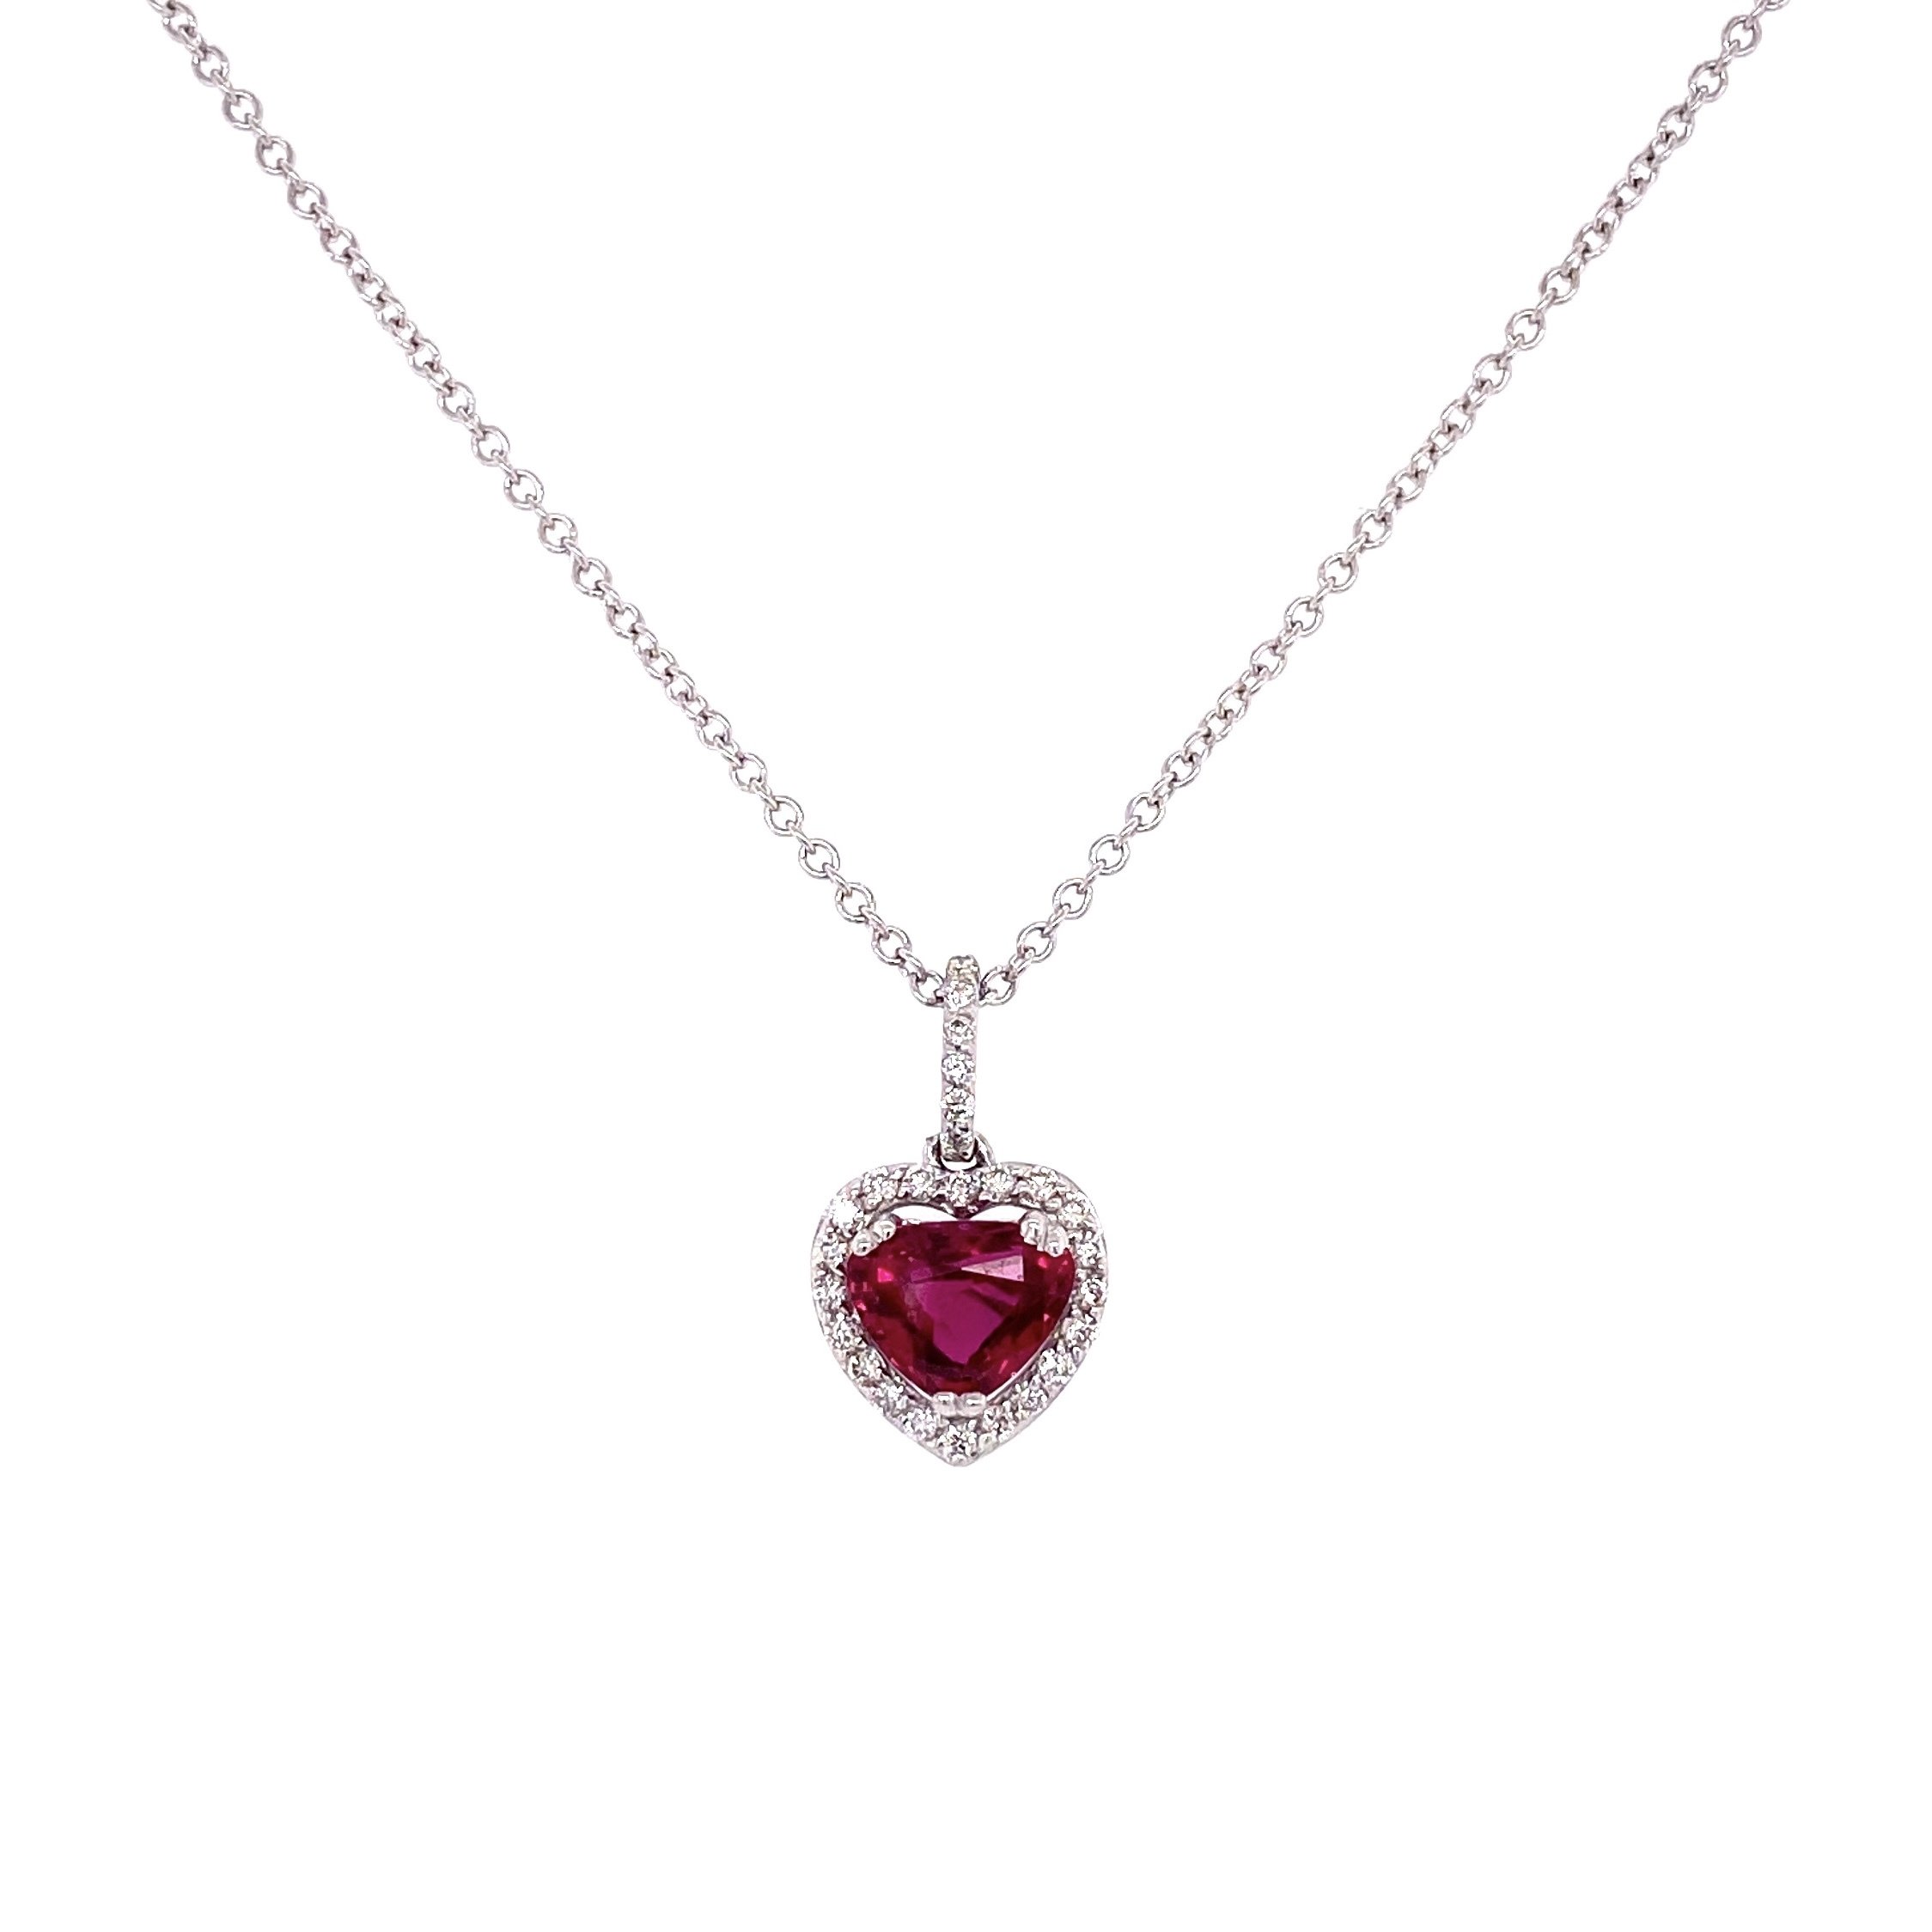 1.30ct Heart Shape Ruby & Diamond Necklace in 14K WG, 2.5g, 16"